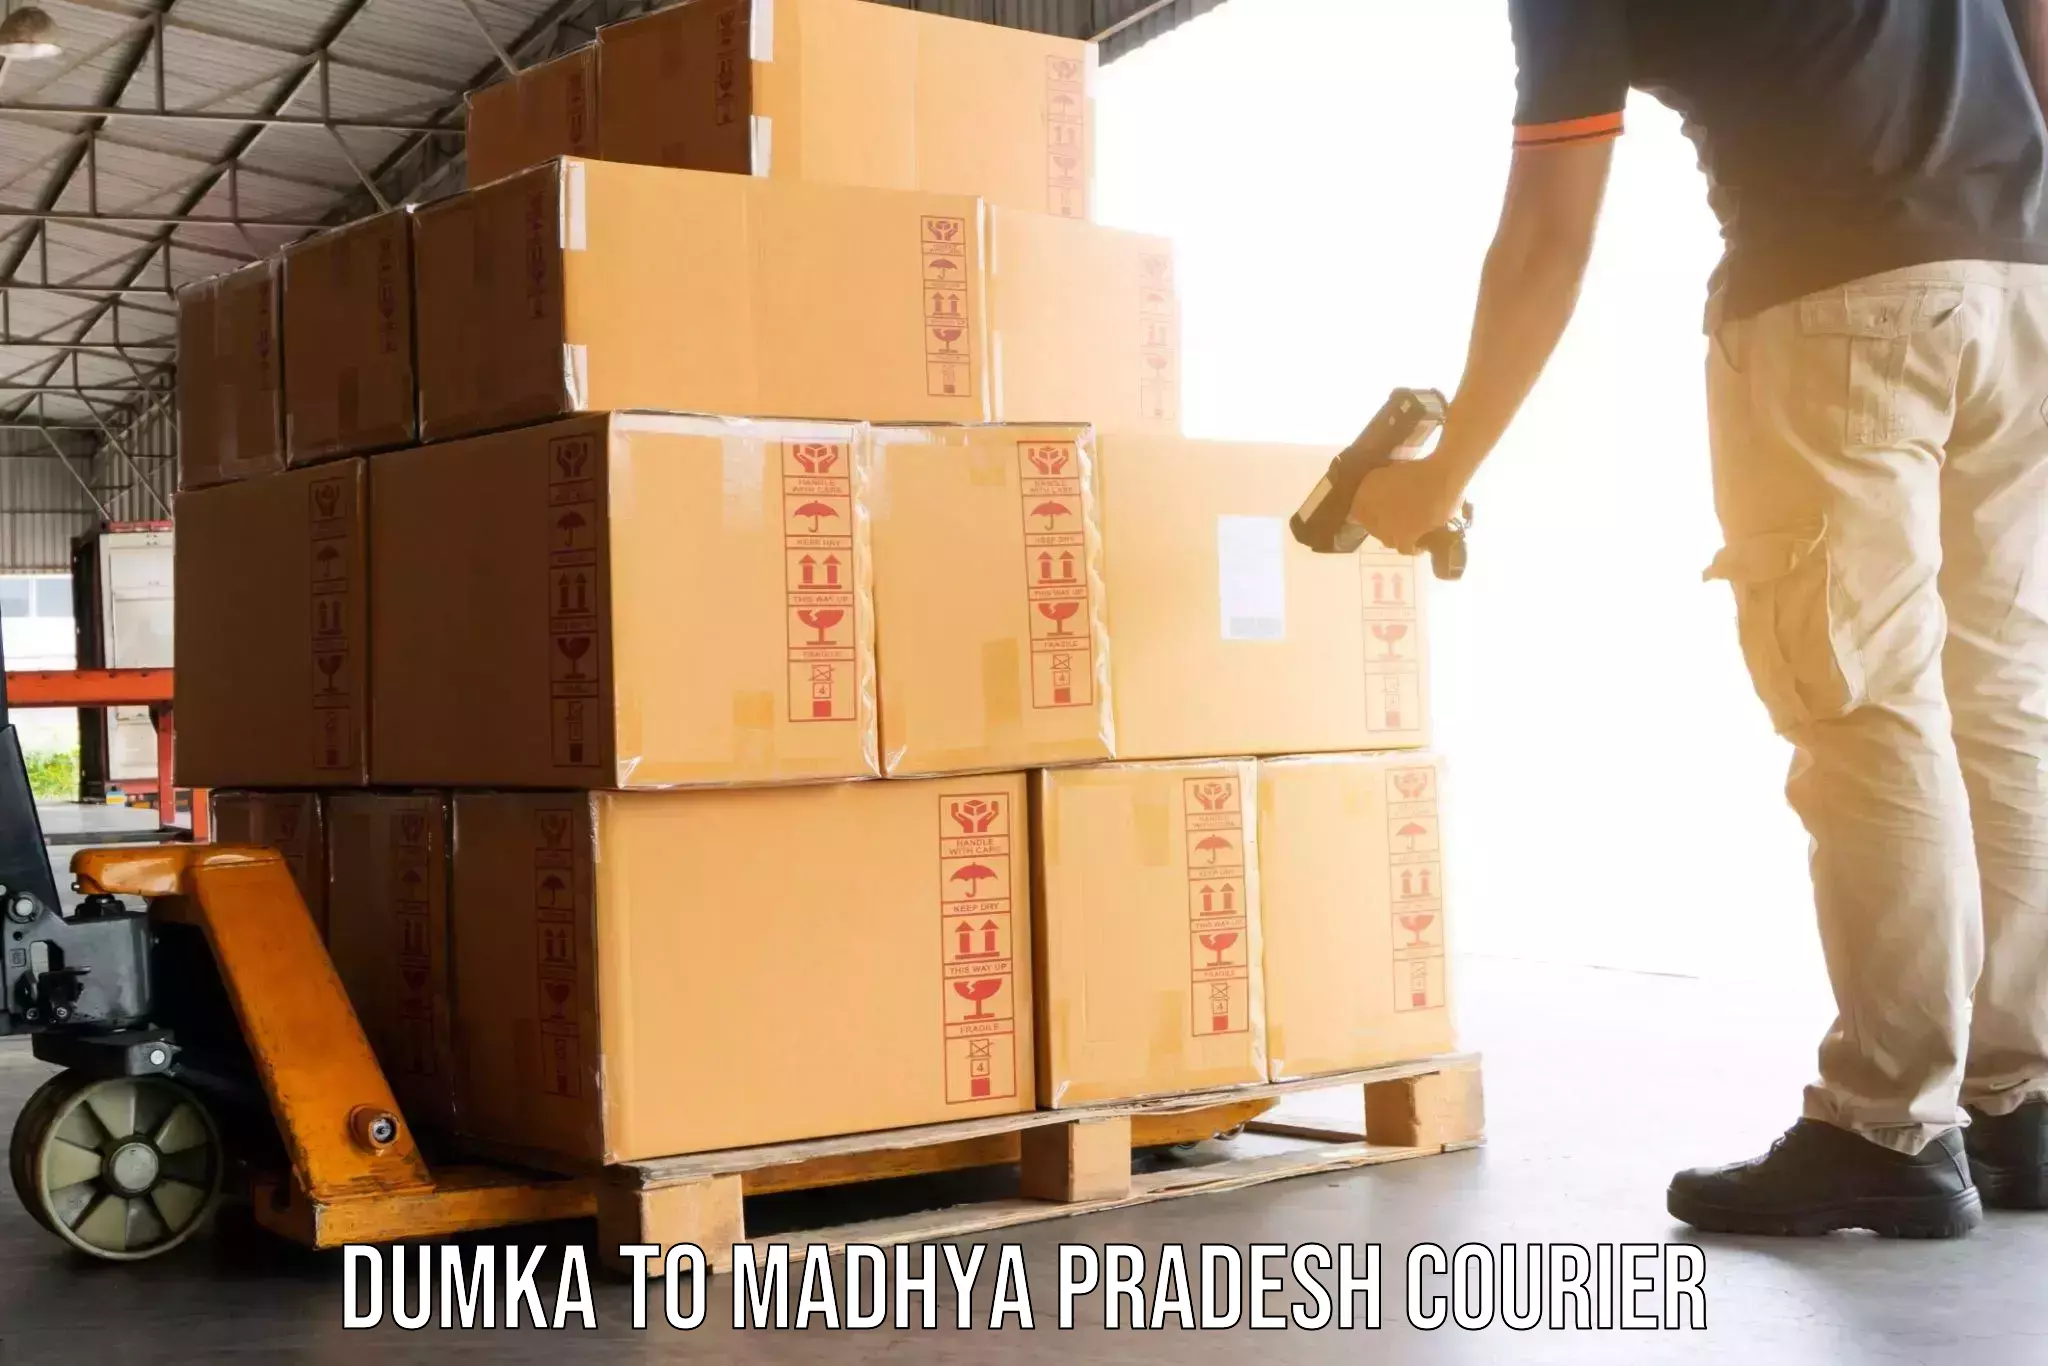 Home relocation experts Dumka to Madhya Pradesh